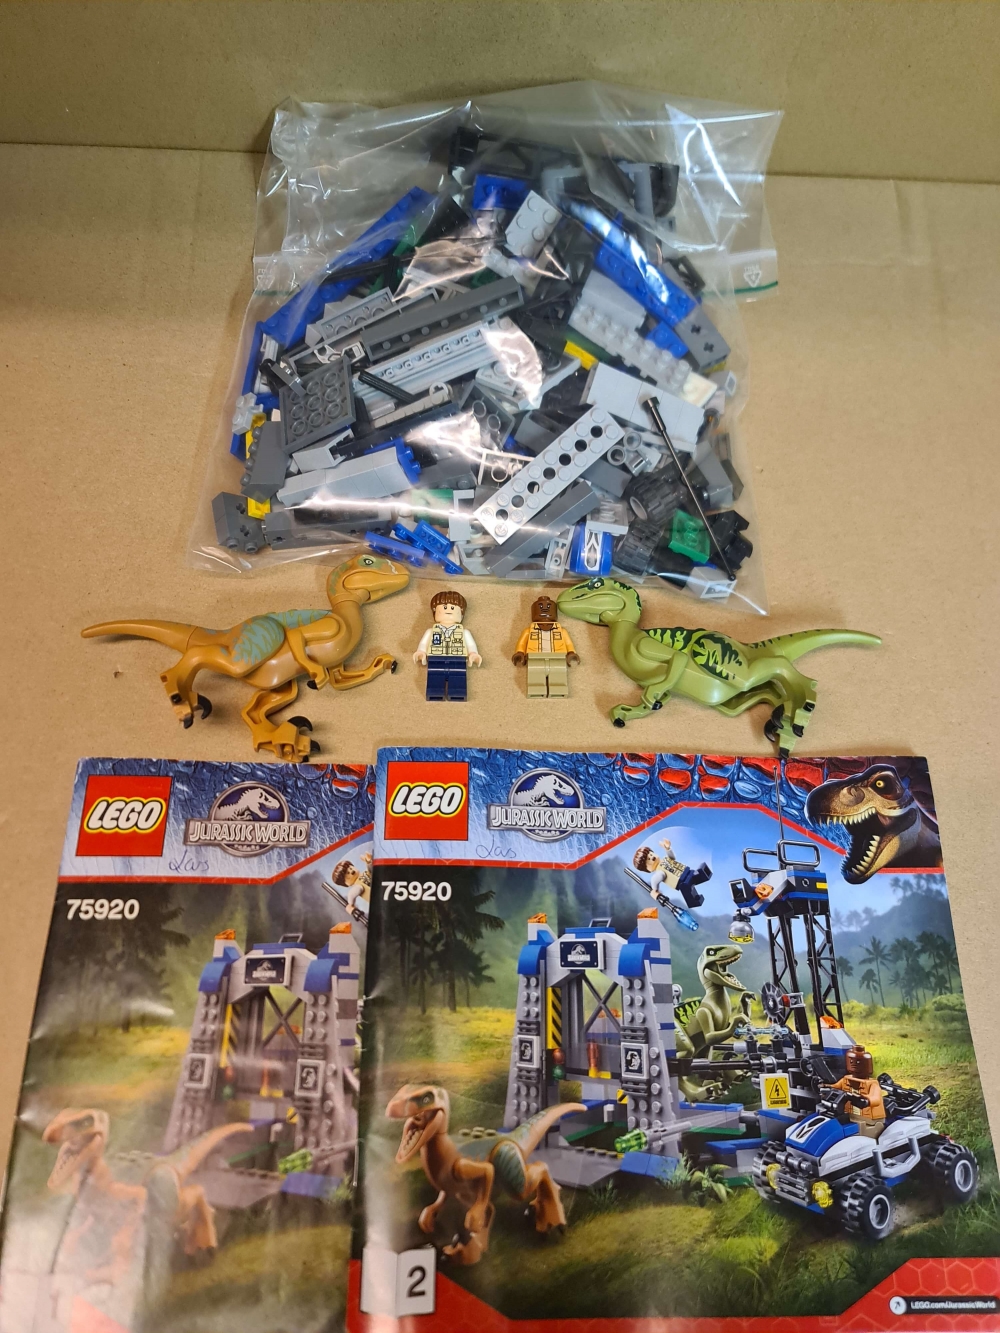 Sett 75920 fra Lego Jurassic World serien.
Meget pent.
Komplett med manualer